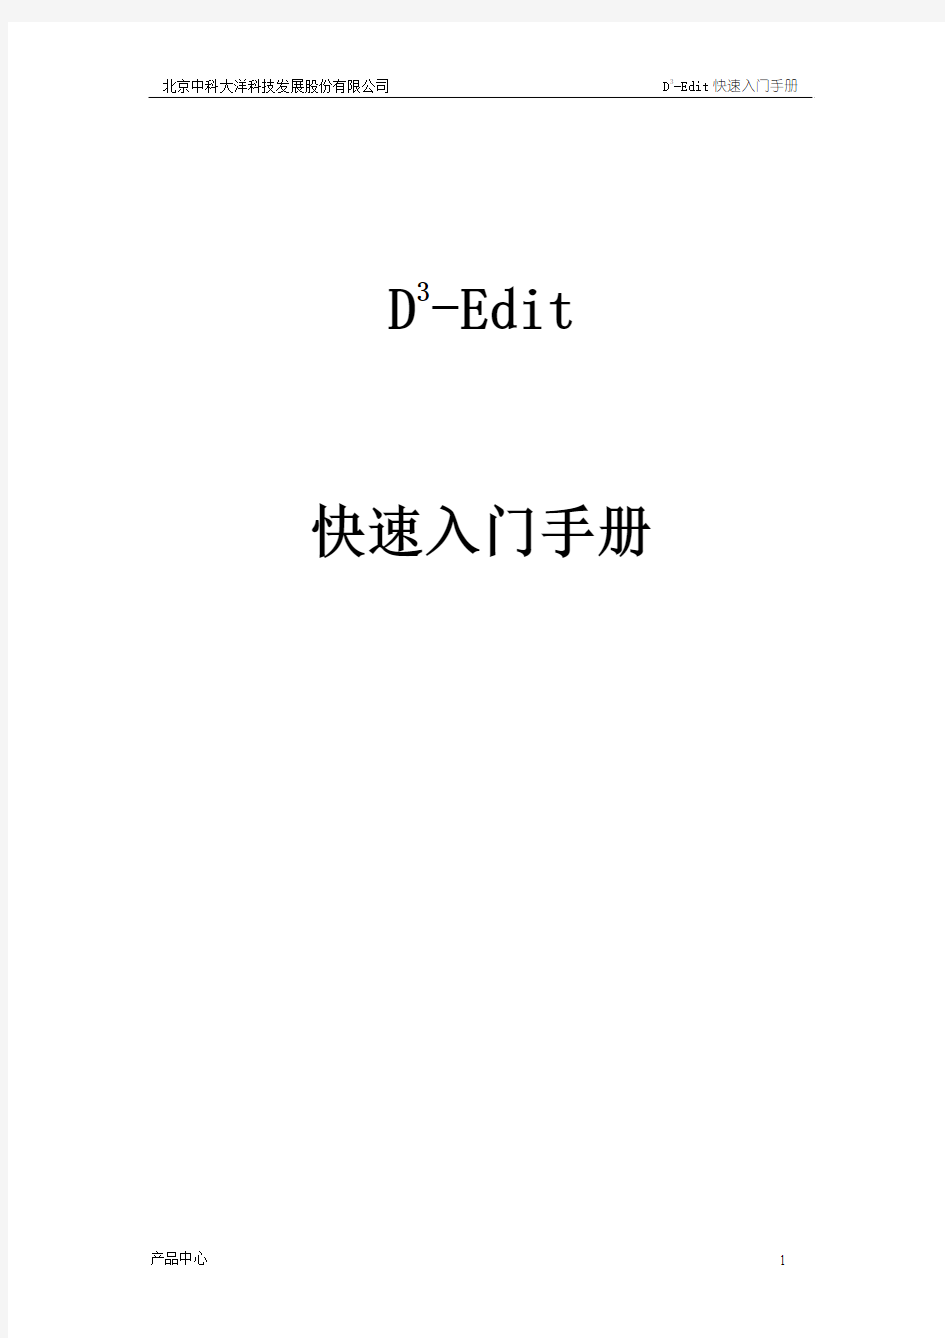 大洋非线编辑系统 D-Cube-Edit_快速入门手册